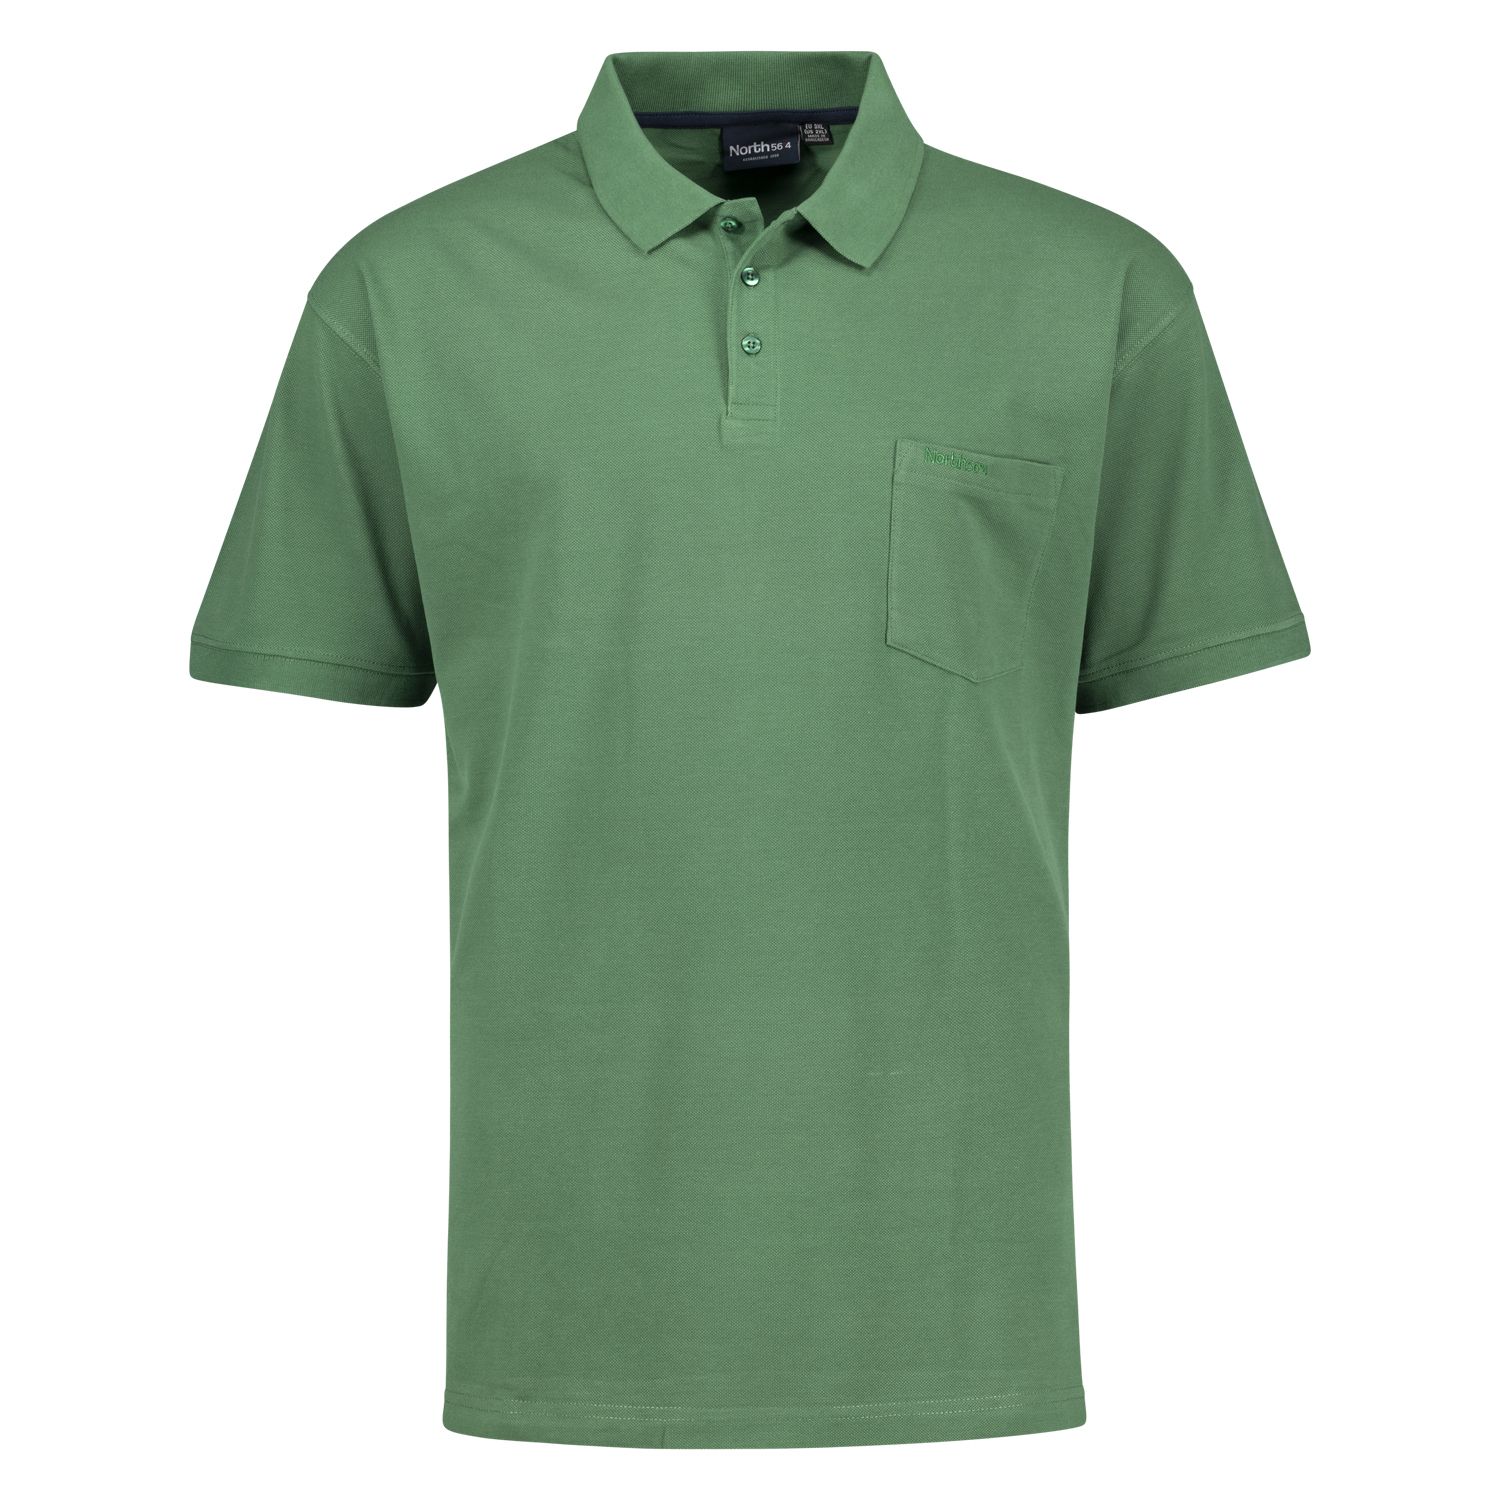 Pique Poloshirt in grün für Herren von Greyes/North 56°4 Übergrößen 3XL - 8XL